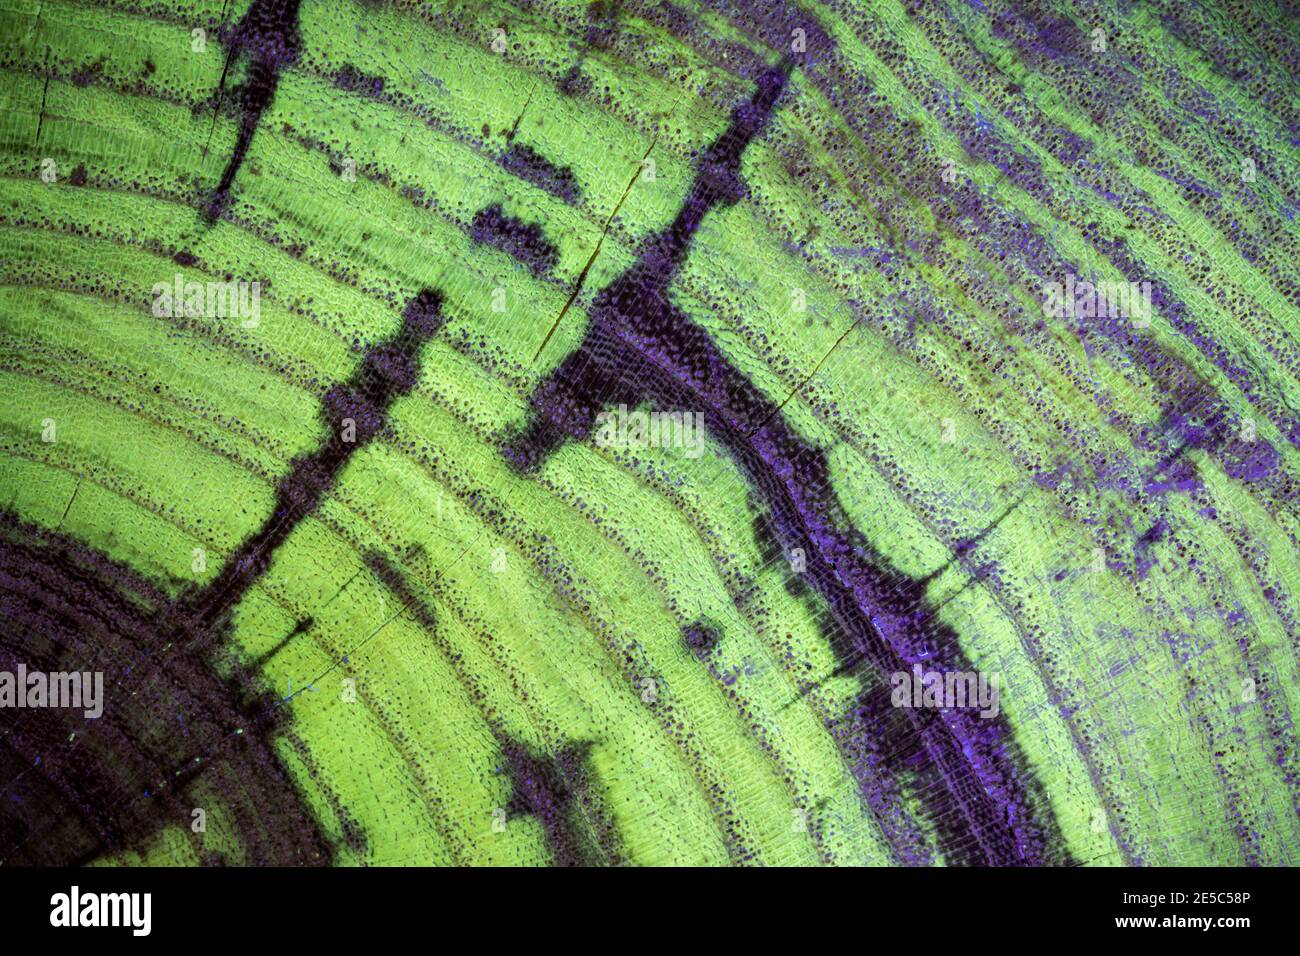 Le grain de bois de criquet noir sous la lumière UV, affichant une fluorescence verte caractéristique. Banque D'Images